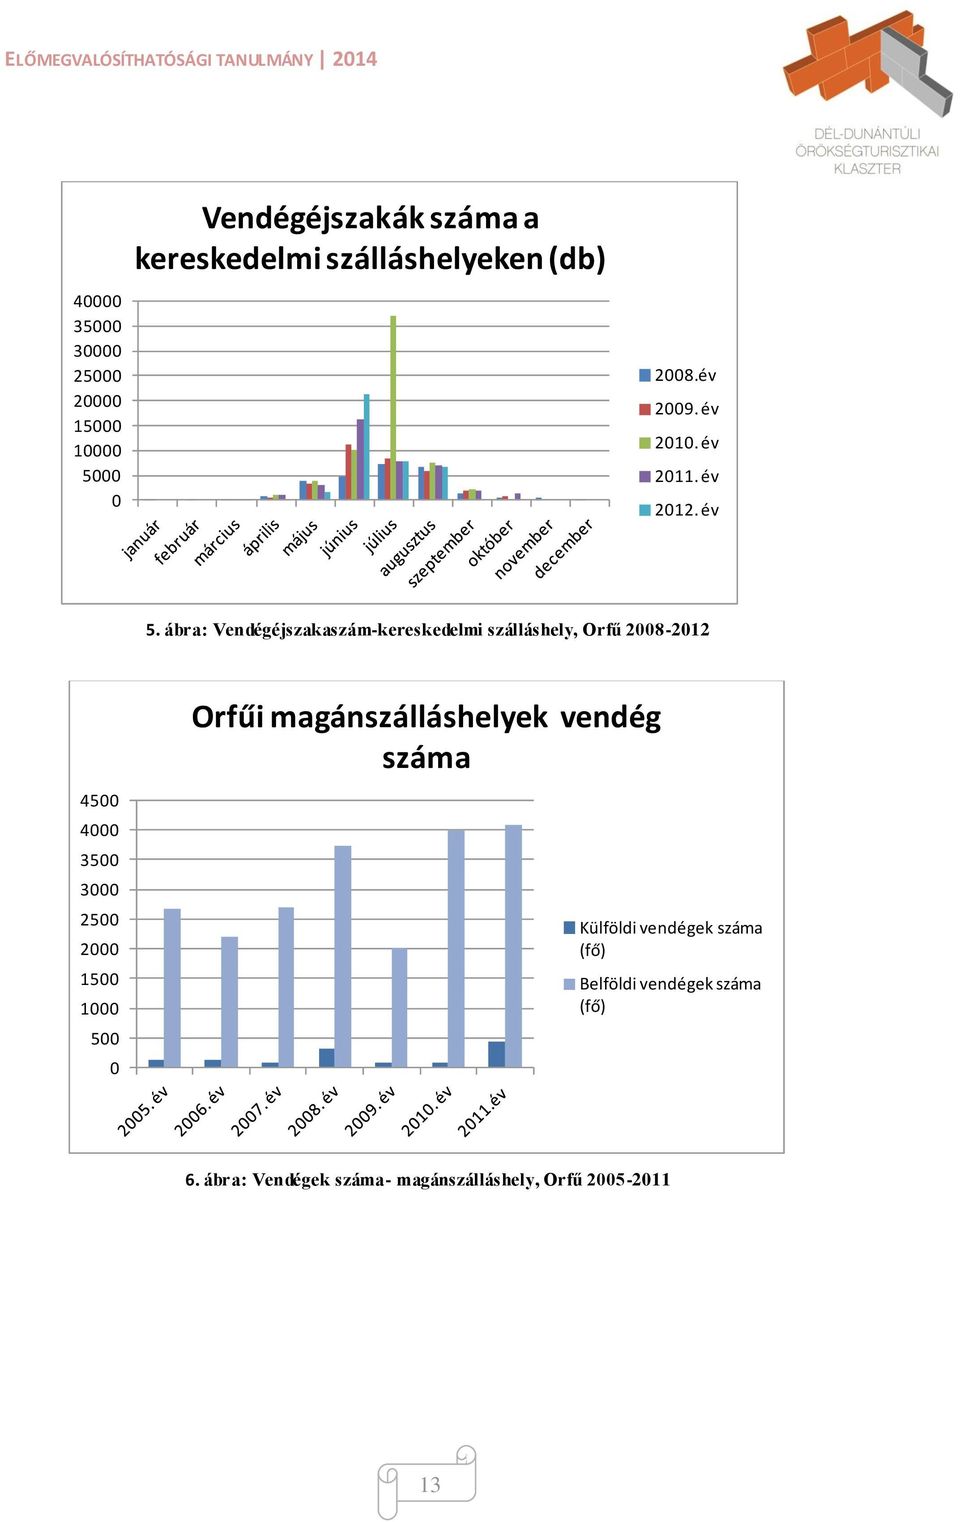 ábra: Vendégéjszakaszám-kereskedelmi szálláshely, Orfű 2008-2012 Orfűi magánszálláshelyek vendég száma